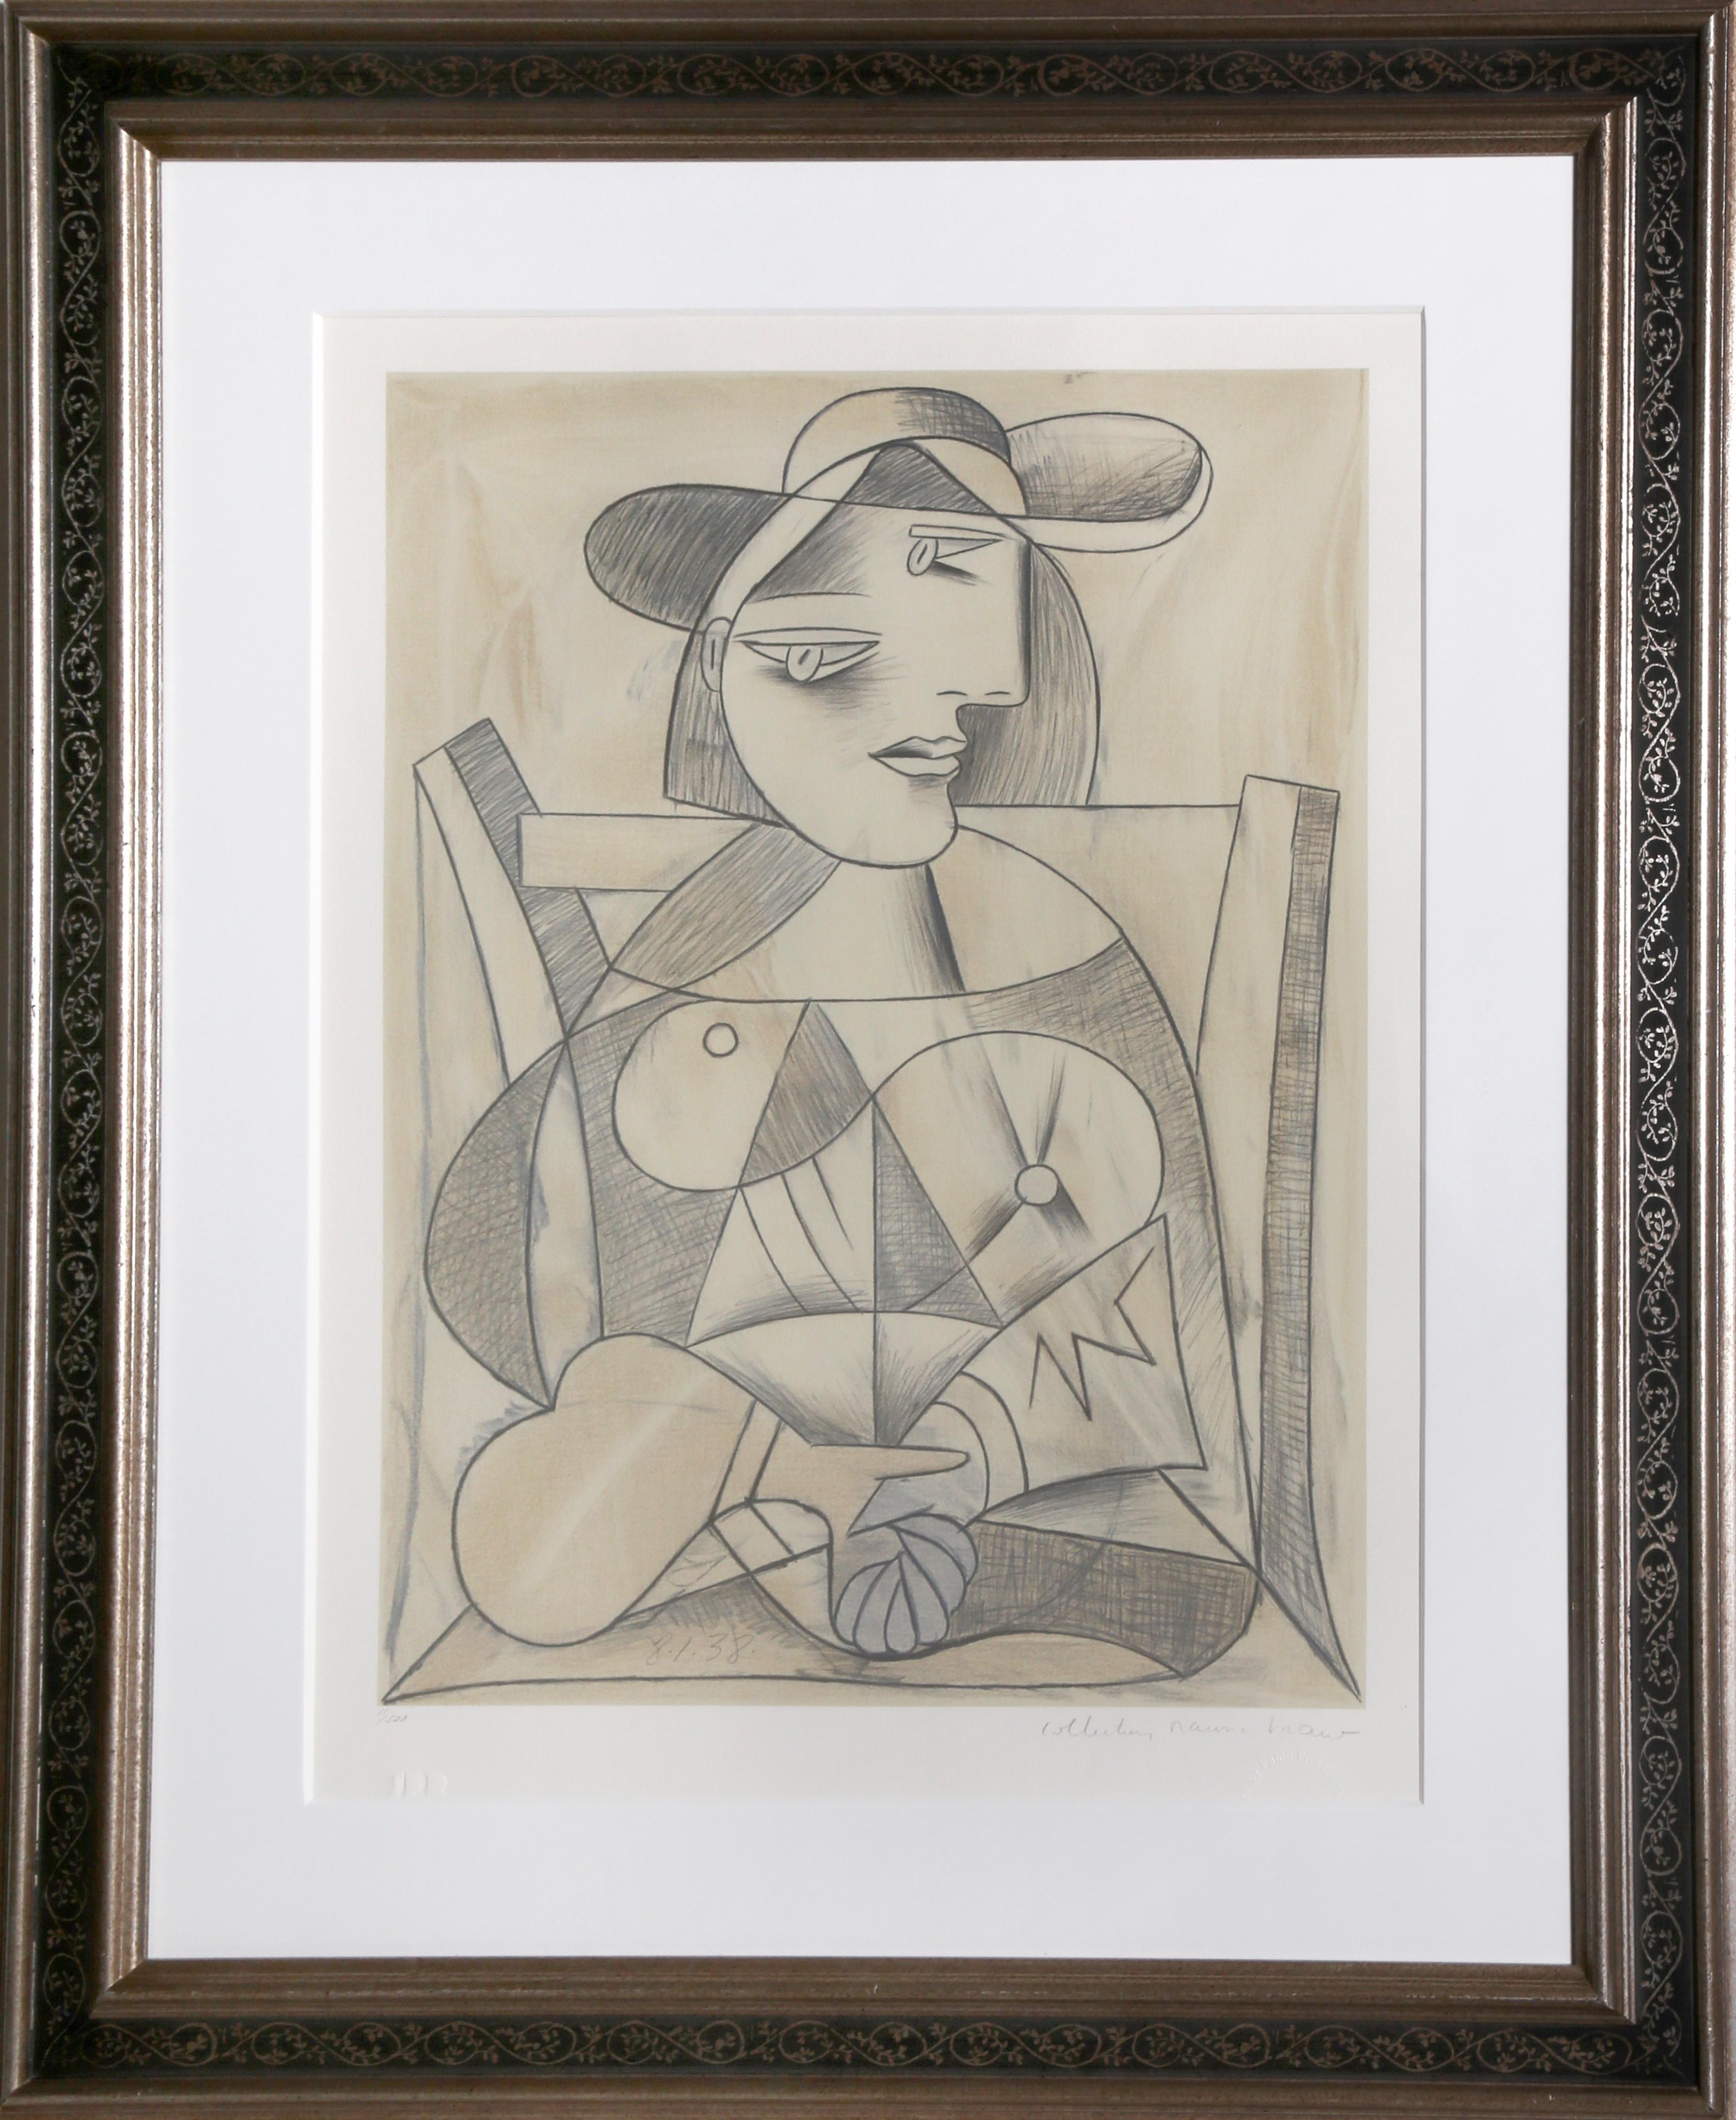 Une lithographie provenant de la Collection S de Marina Picasso d'après le tableau de Pablo Picasso "Femme aux Mains Jointes (Marie-Therese Walter)".
".  La peinture originale a été achevée en 1938. Dans les années 1970, après la mort de Picasso,